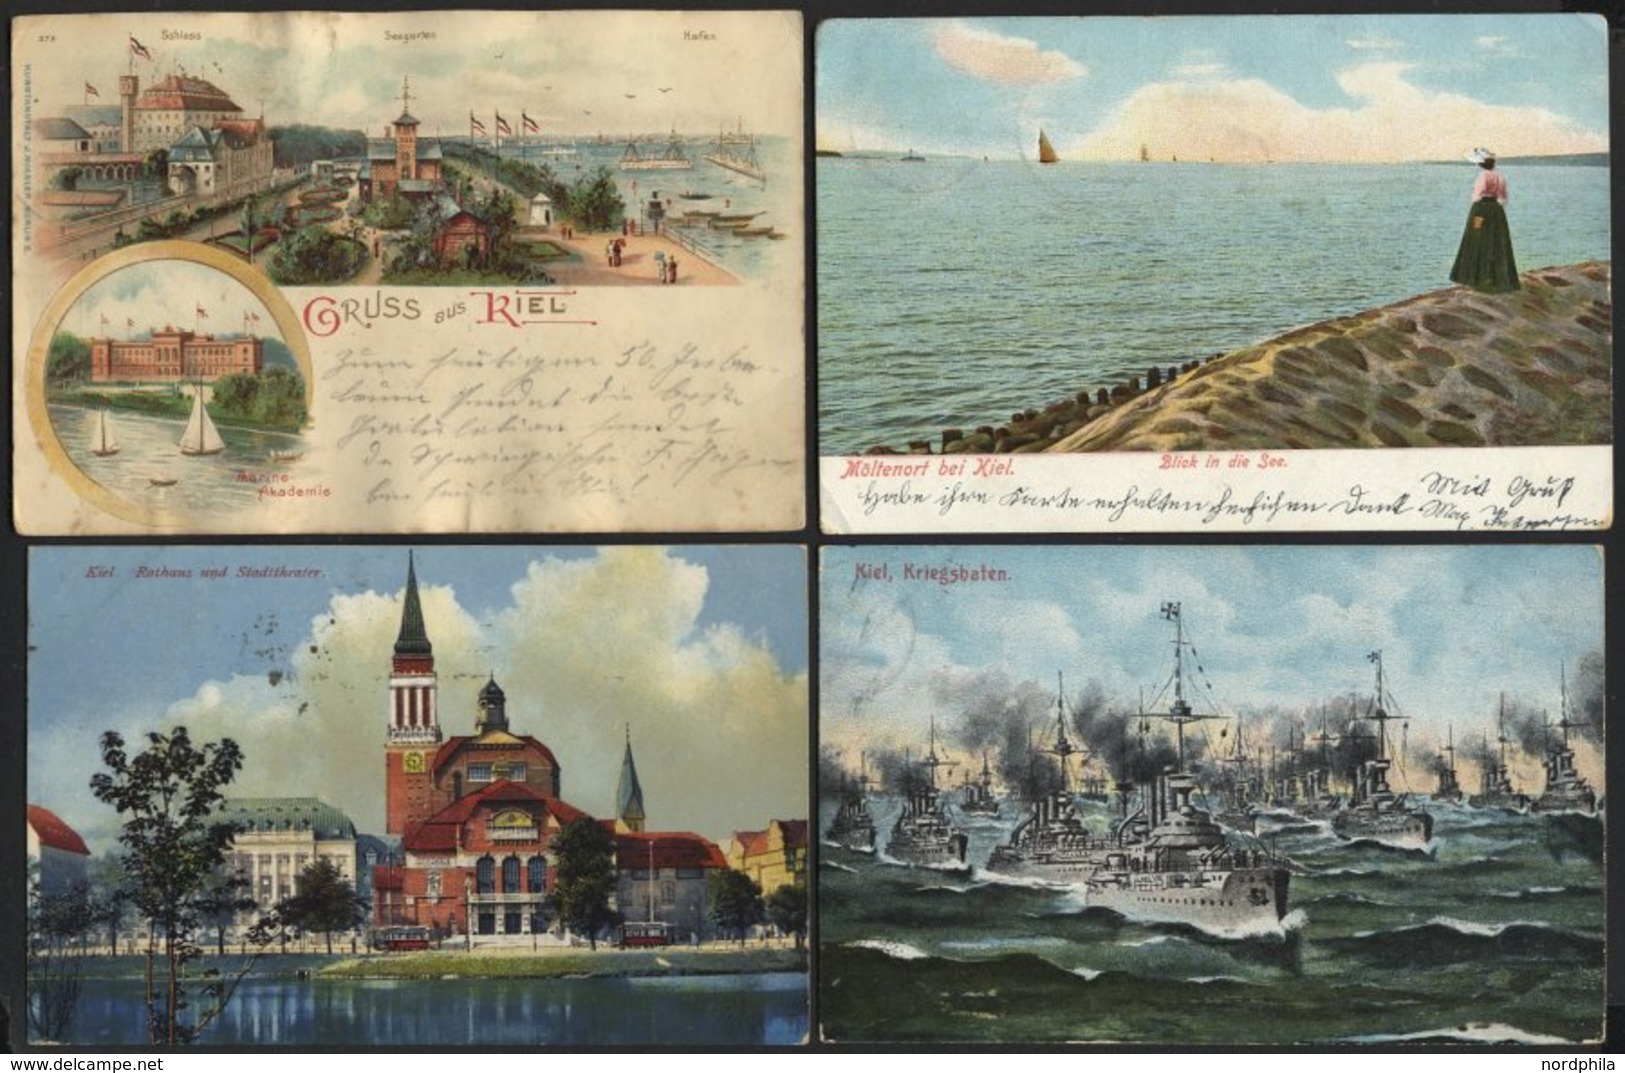 ALTE POSTKARTEN - DEUTSCH KIEL, Sammlung von 200 verschiedenen Ansichtskarten in 2 Briefalben, mit seltenen Lithographie